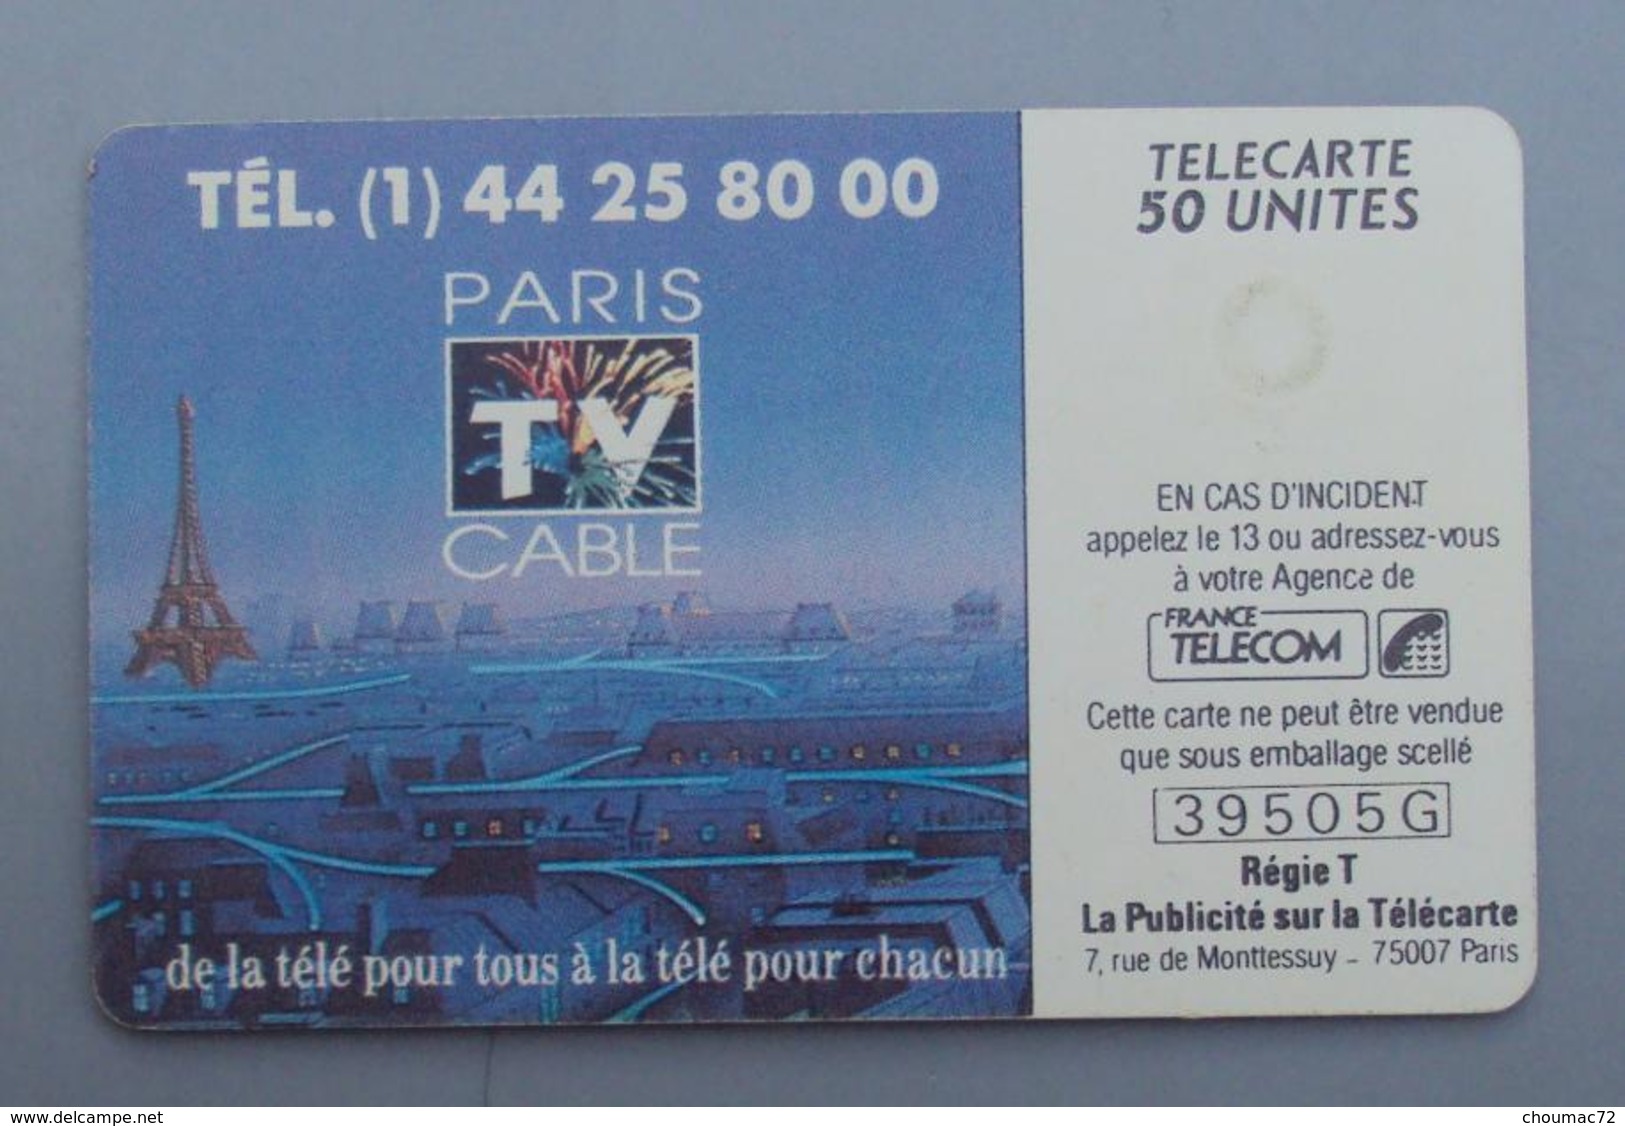 086, Télécarte Publique Paris TV Cable 50U - 1990